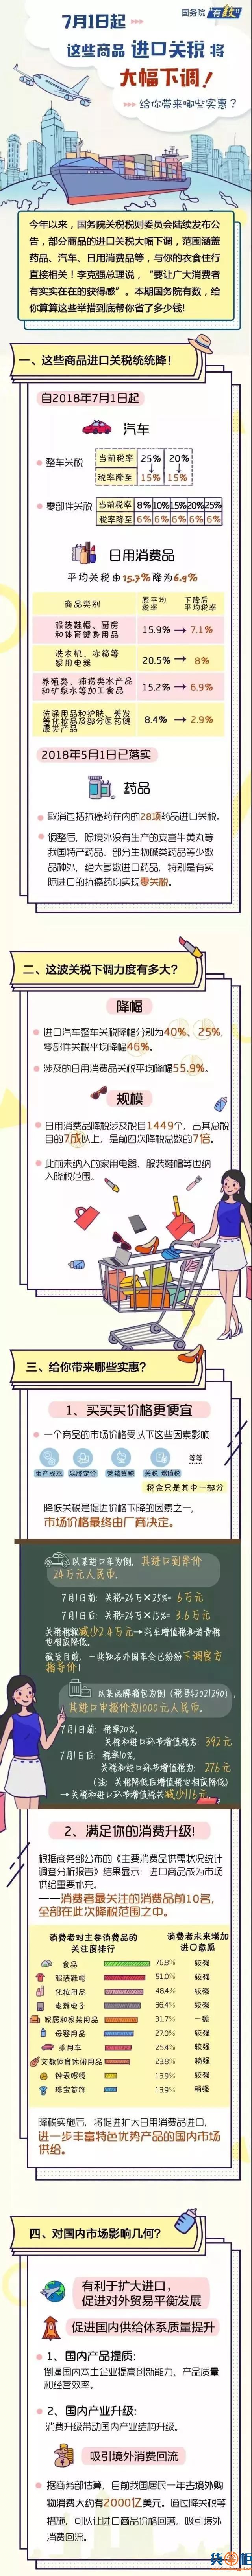 7月1日起，我国降低了1449个税目的日用消费品进口关税-货掌柜www.huozhanggui.net